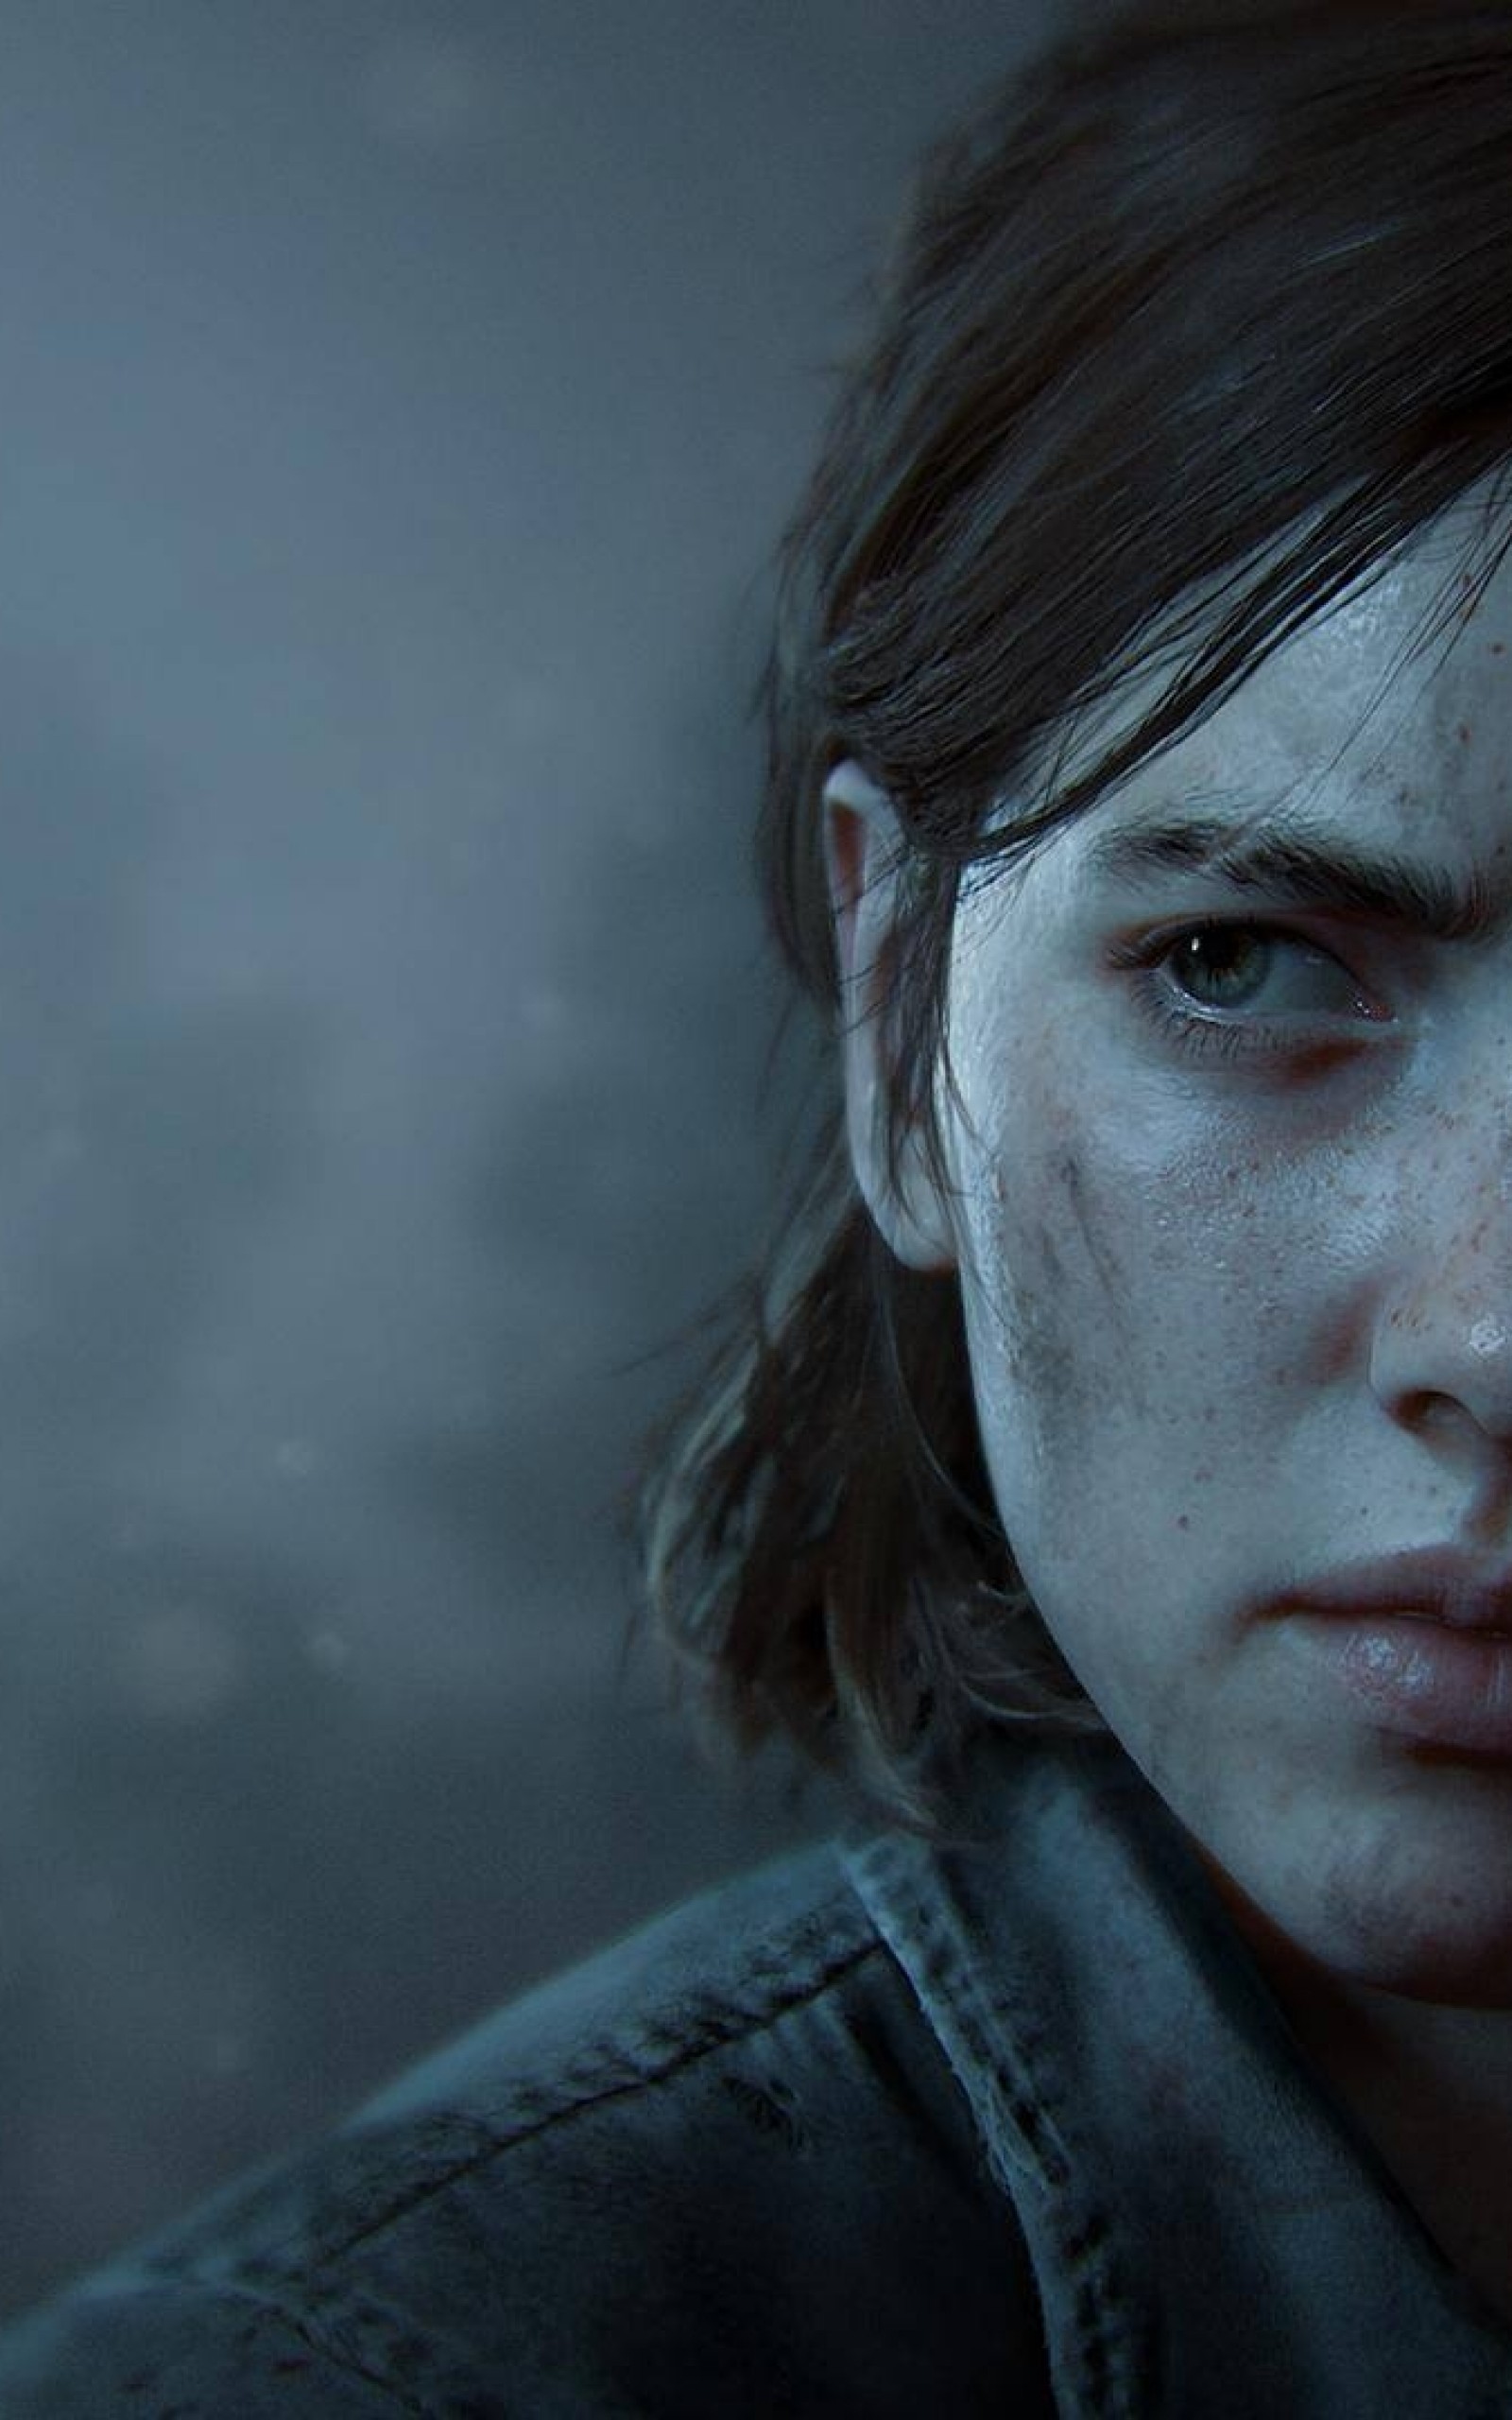 The Last Of Us Part 2, Ellie, Face Portrait - Ellie The Last Of Us 2 - HD Wallpaper 